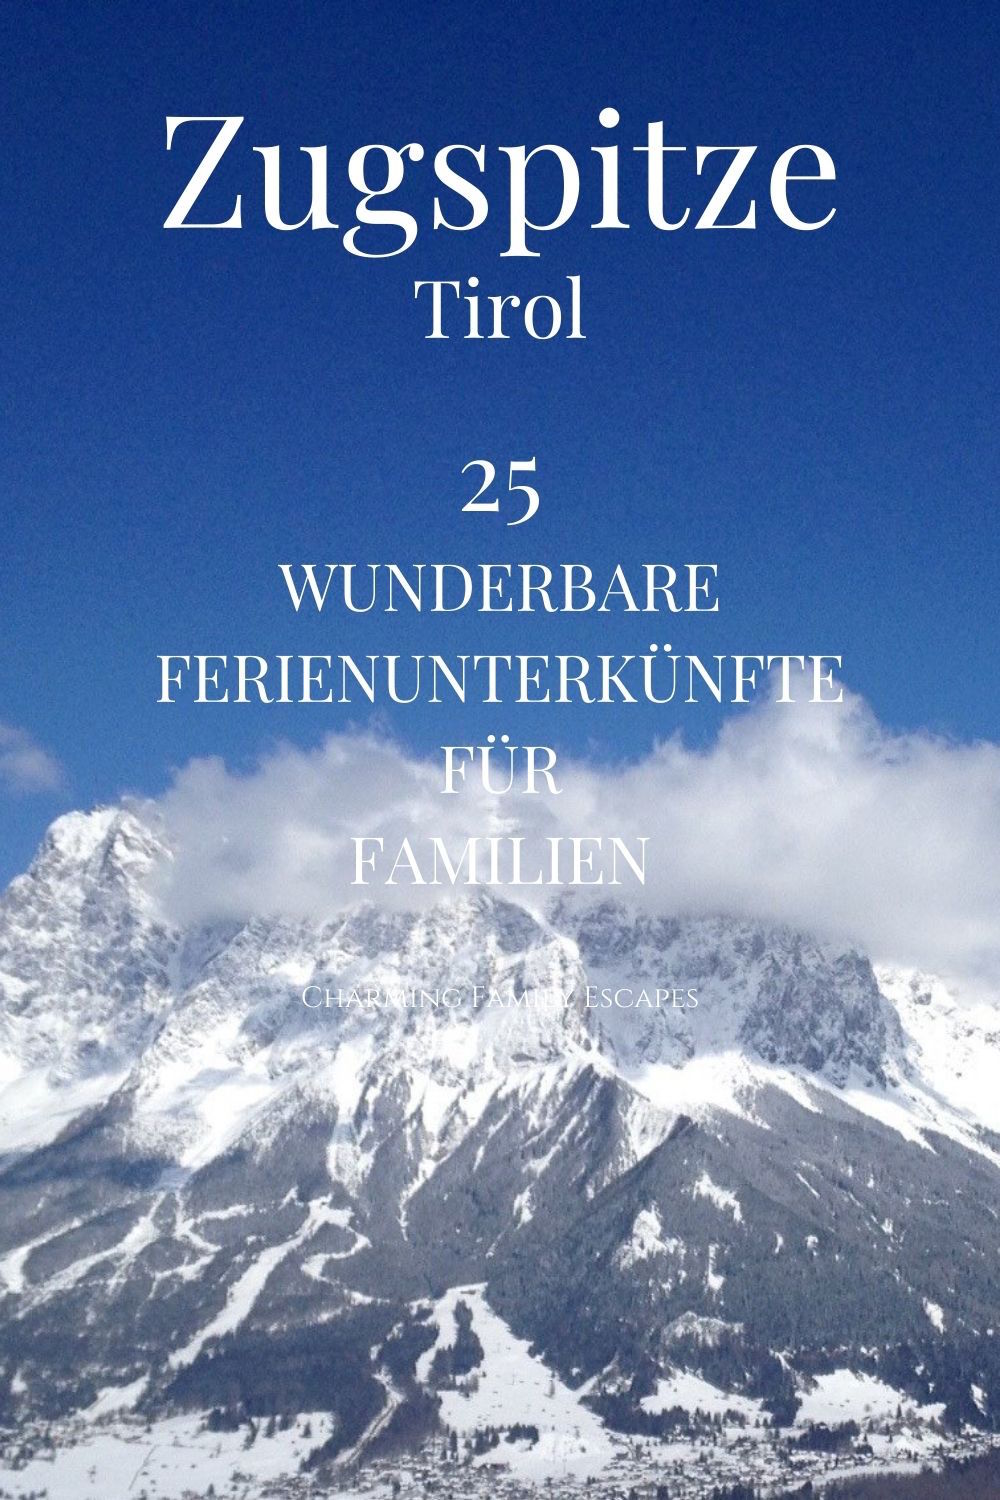 25 wunderbare Ferienunterkünfte für Familien an der Zugspitze, Tirol, Österreich.